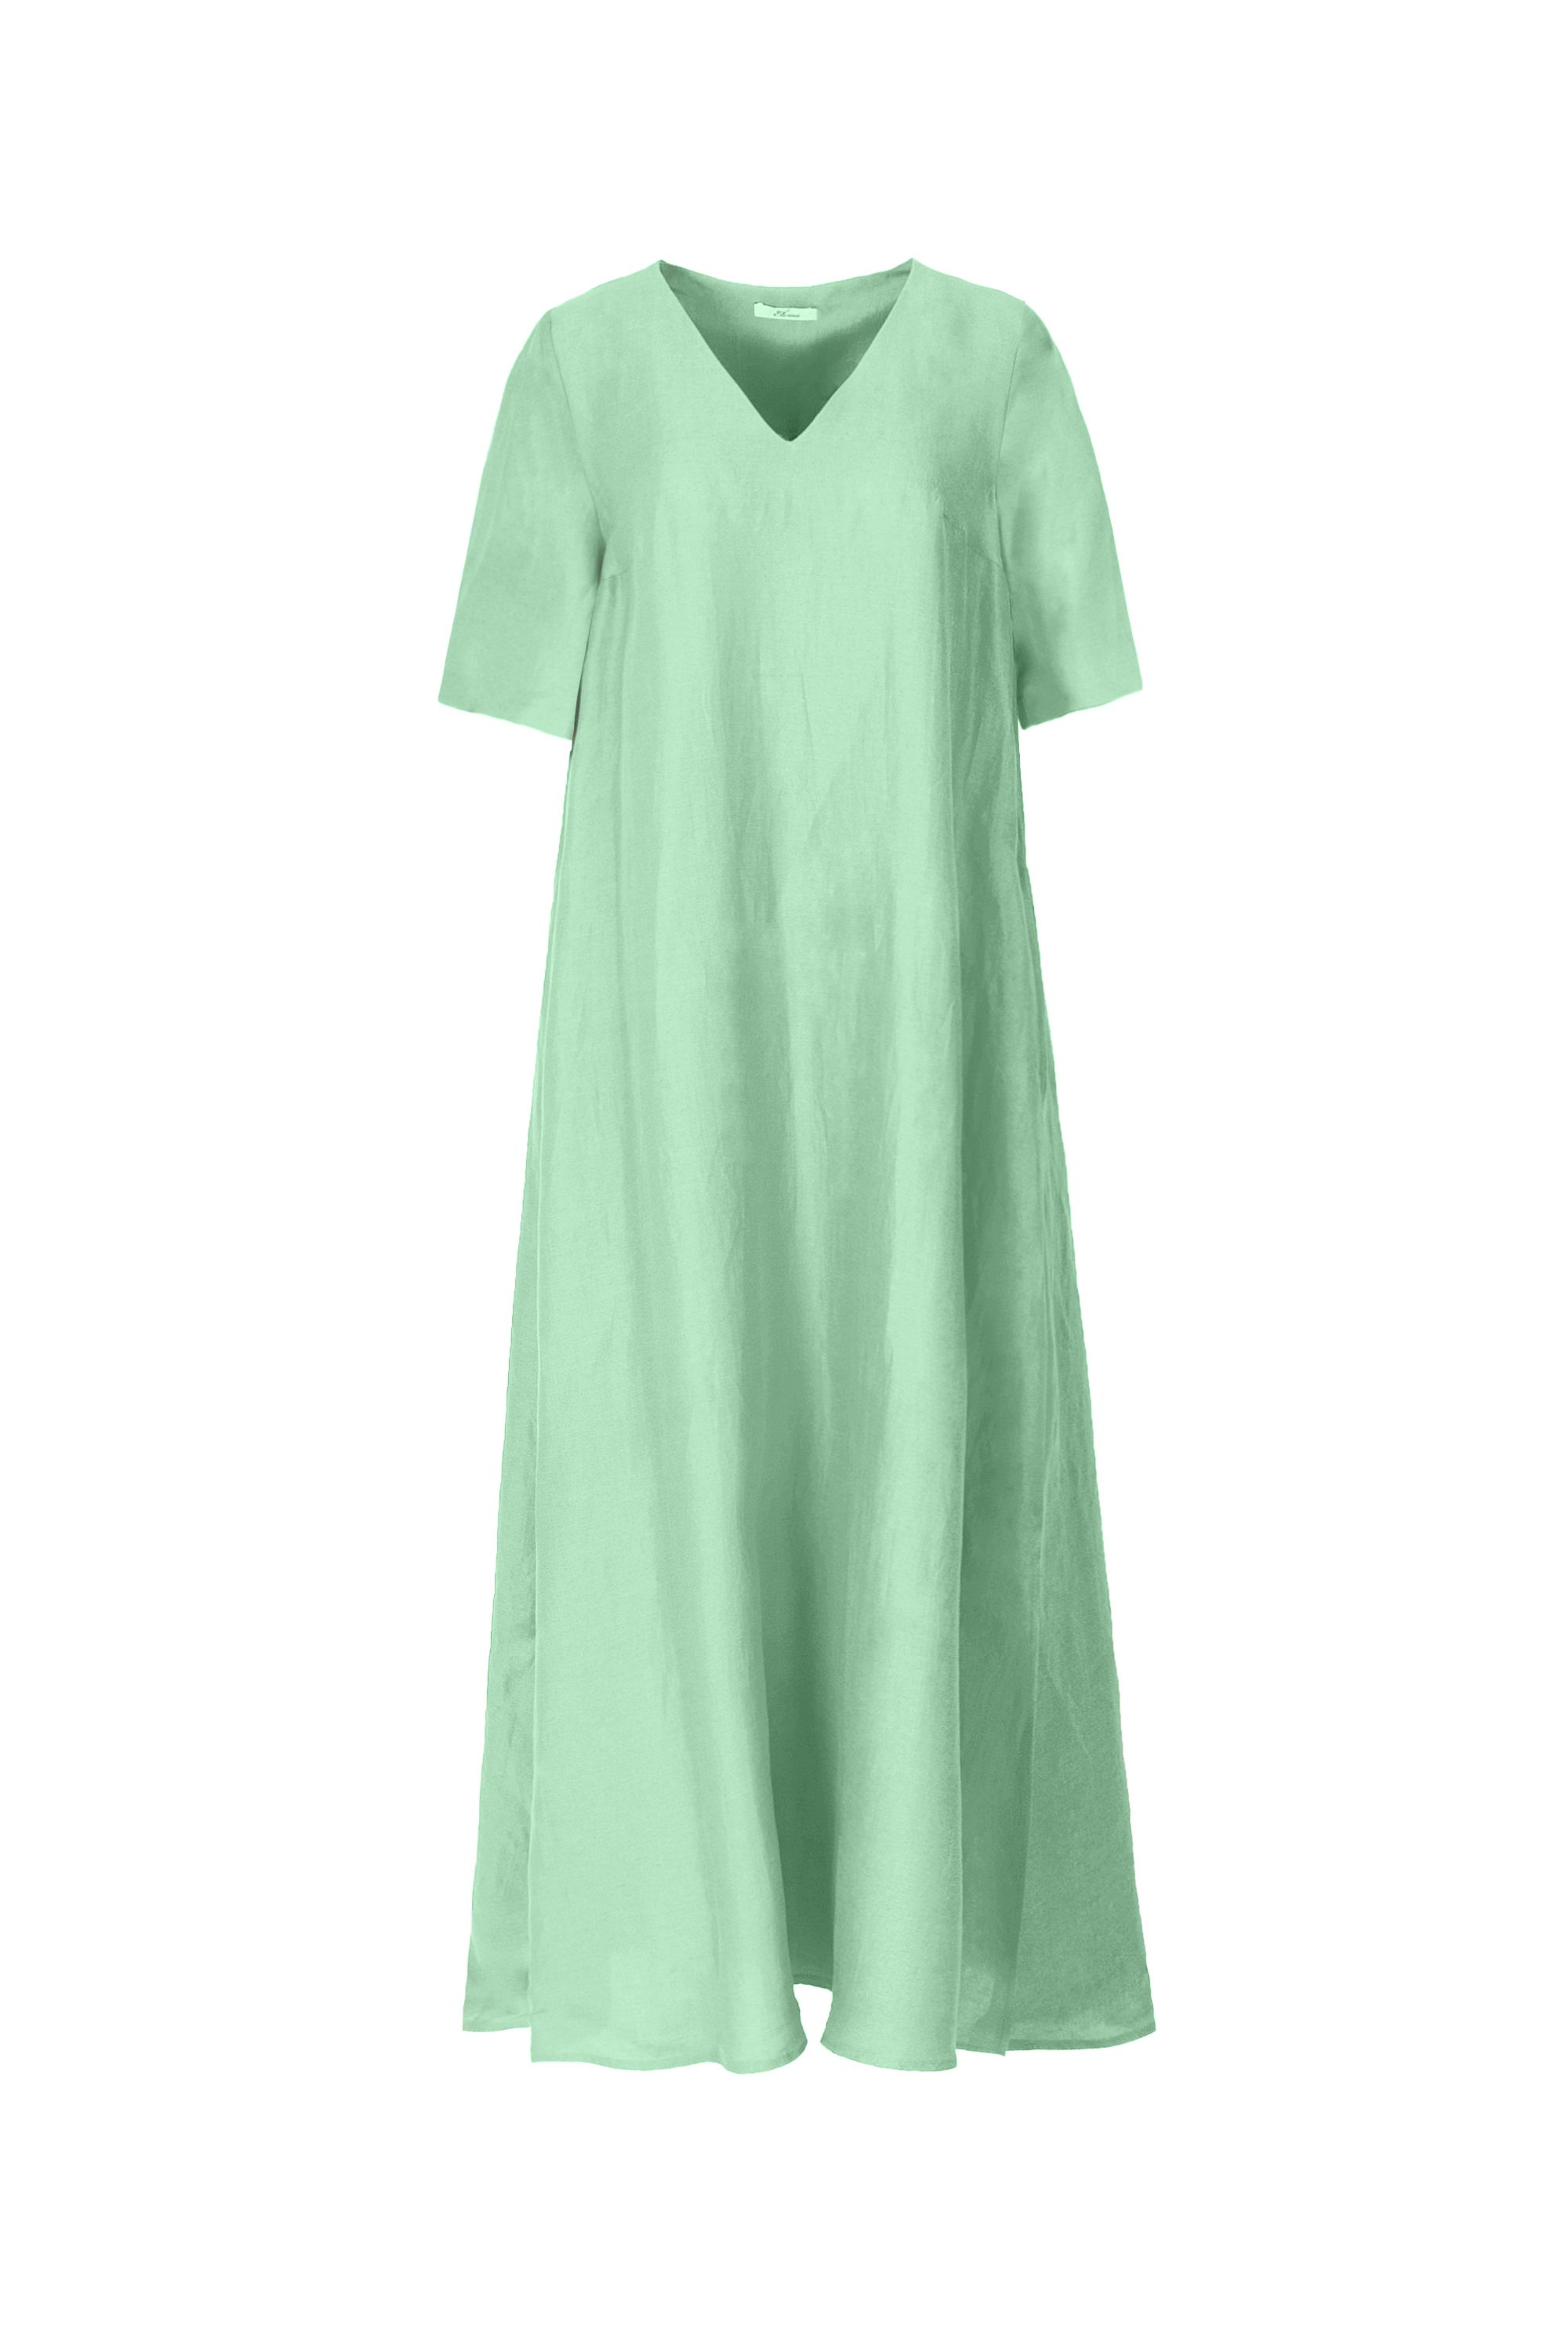 Платье женское 5К-13086-1